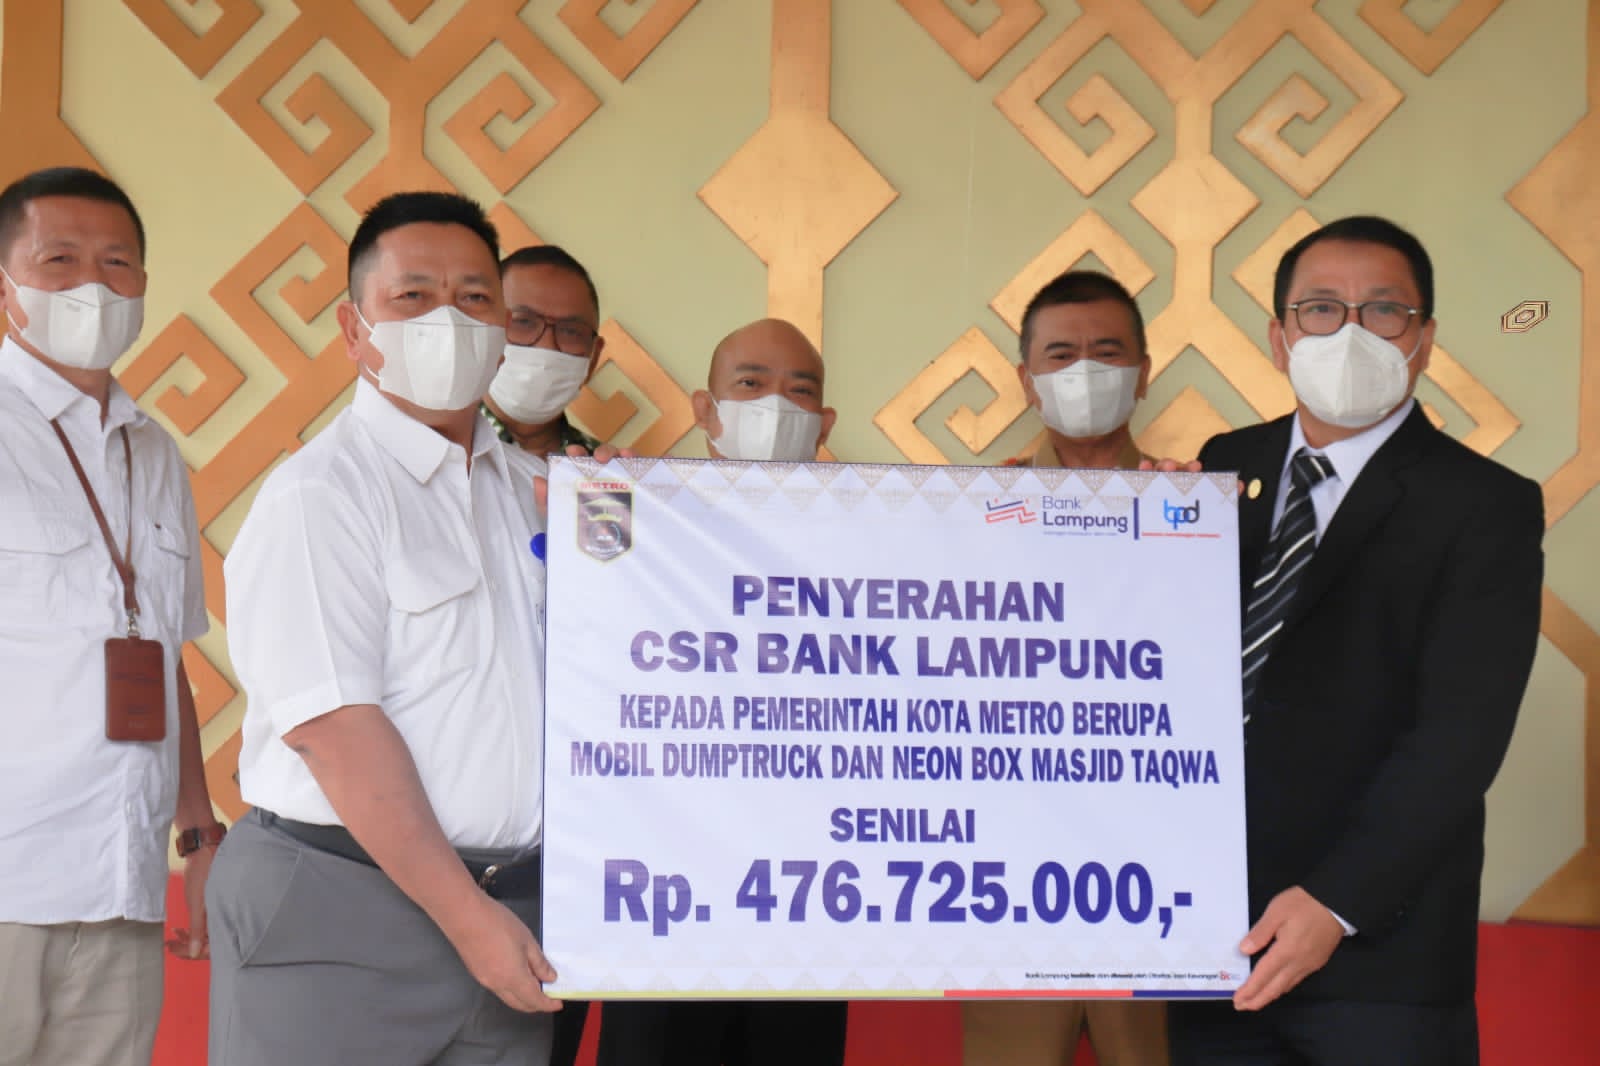 Bank Lampung Kembali Menyerahkan Bantuan CSR Kepada Pemerintah Kota Metro